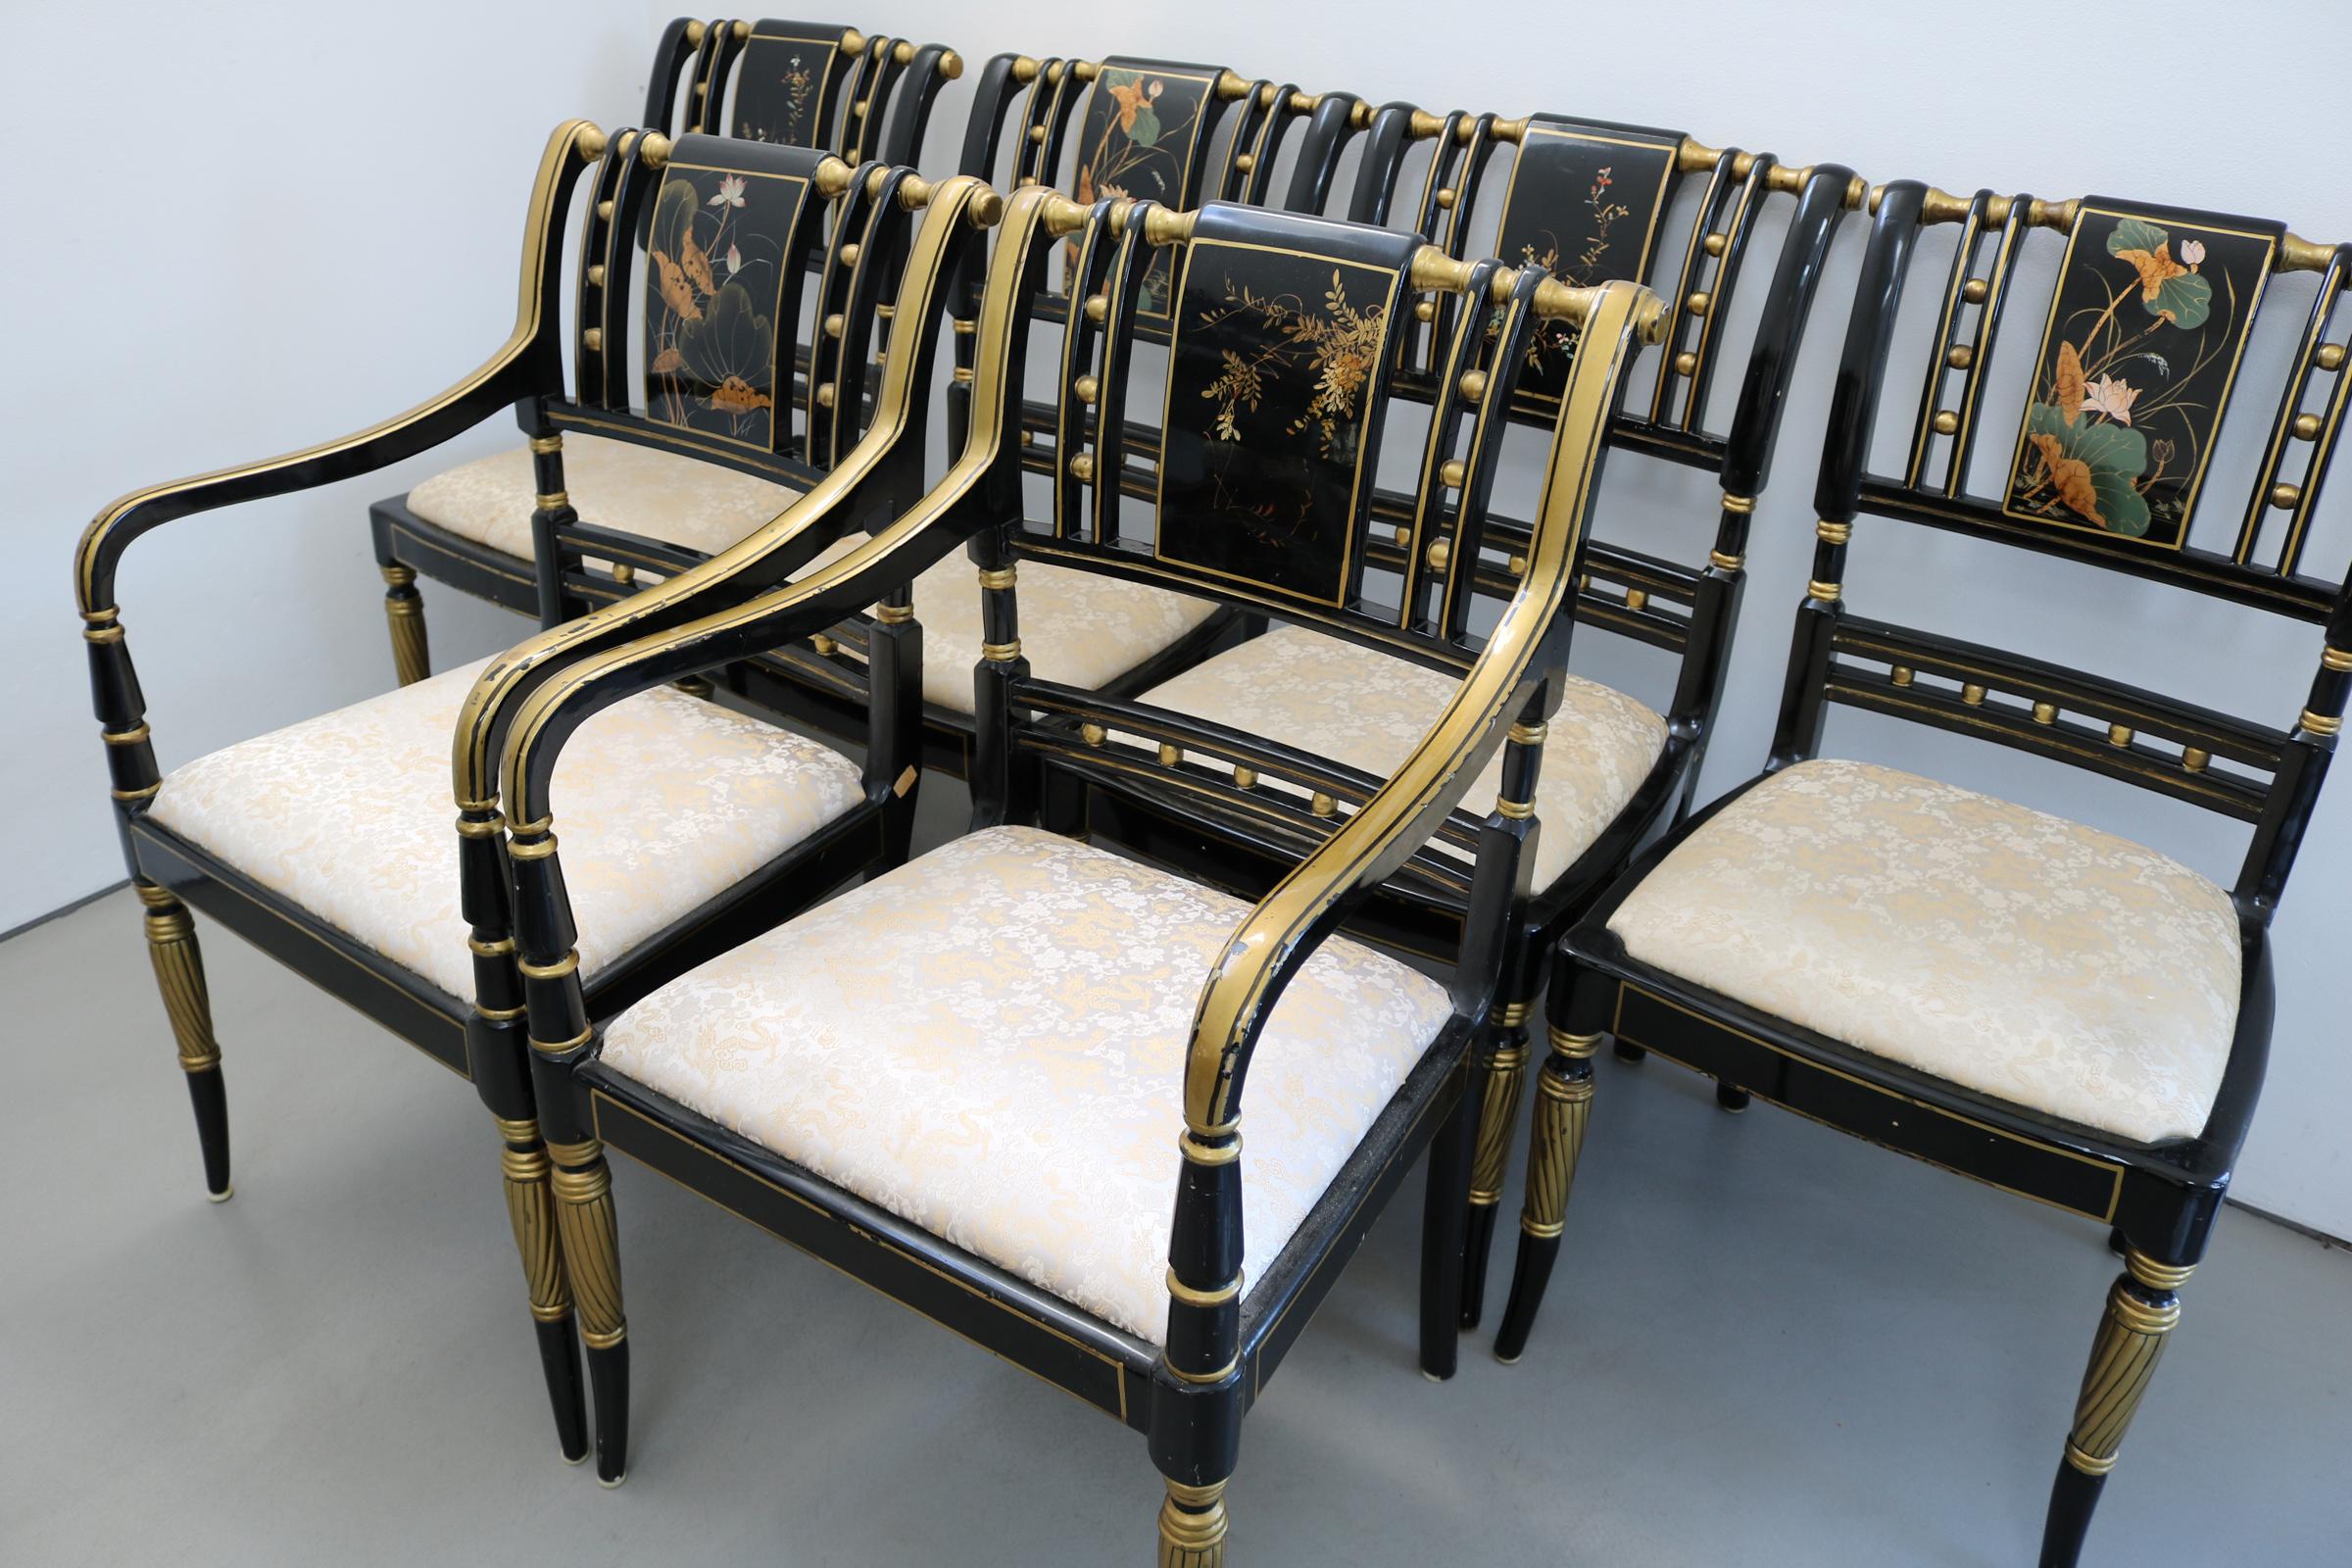 Ensemble de six chaises chinoises peintes à la main avec du vernis à poncer
2 fauteuils et 4 chaises d'appoint. Tous avec des designs différents. Tissu de soie.
L'une des chaises avait une fissure qui a été réparée et est très solide.